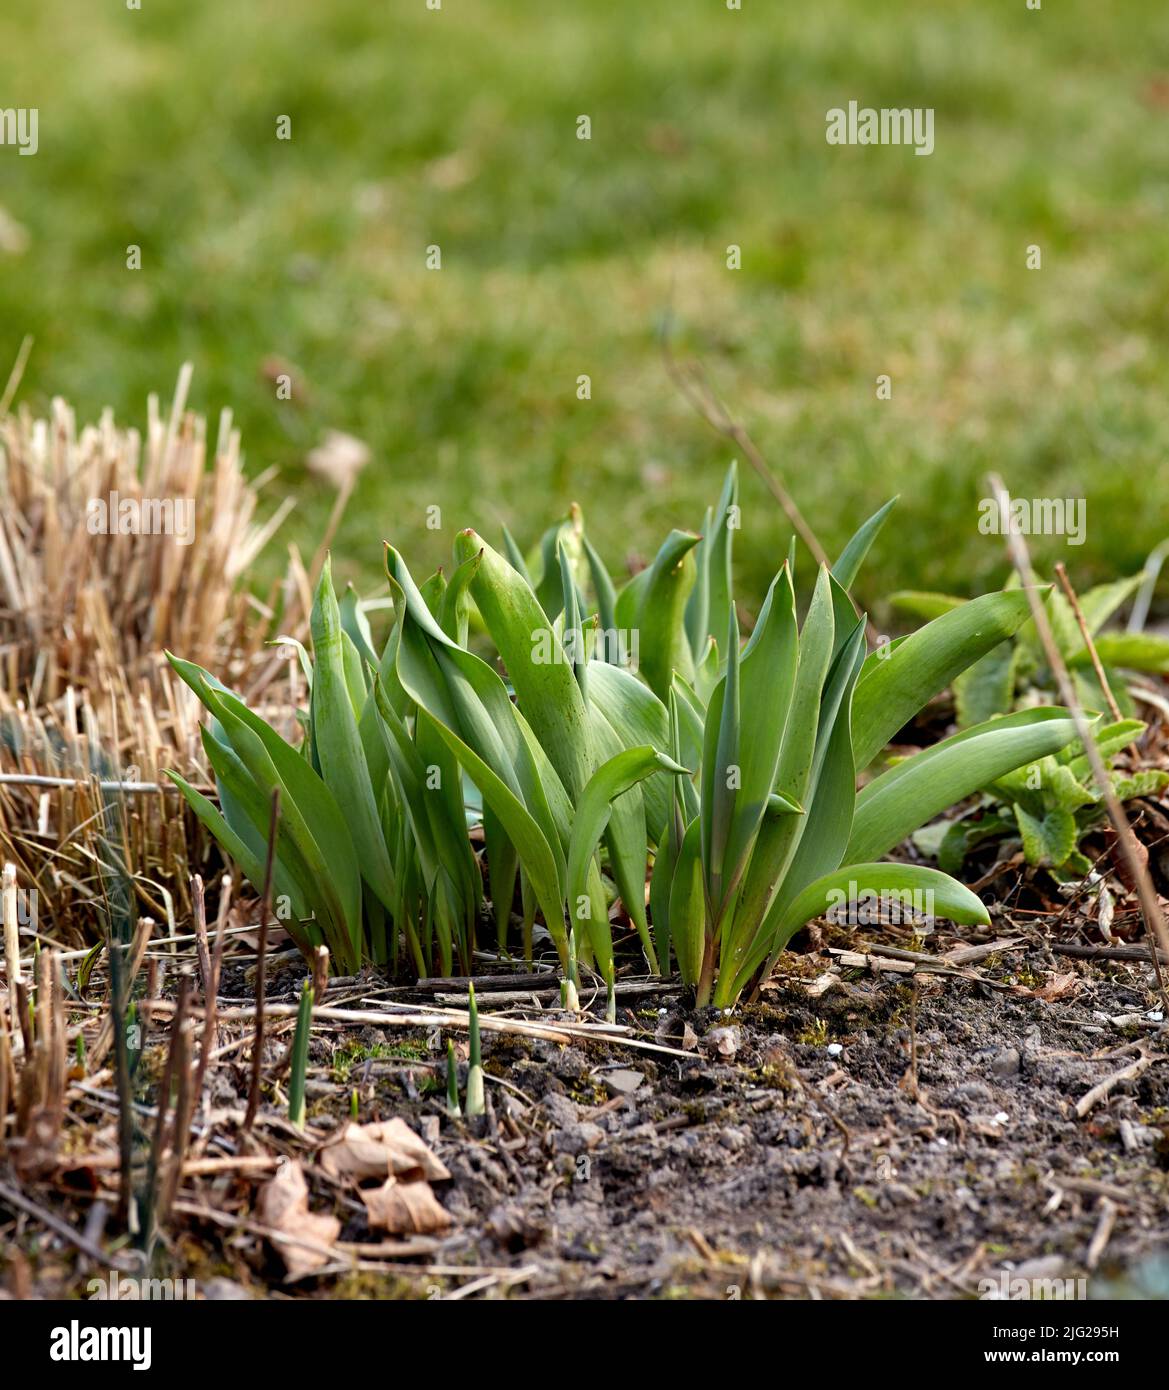 Primo piano di germogli di piante verdi piantati nel terreno in un giardino. Dettagli del processo di sviluppo di crescita di un fiore tulipano che cresce in primavera. Giardinaggio Foto Stock